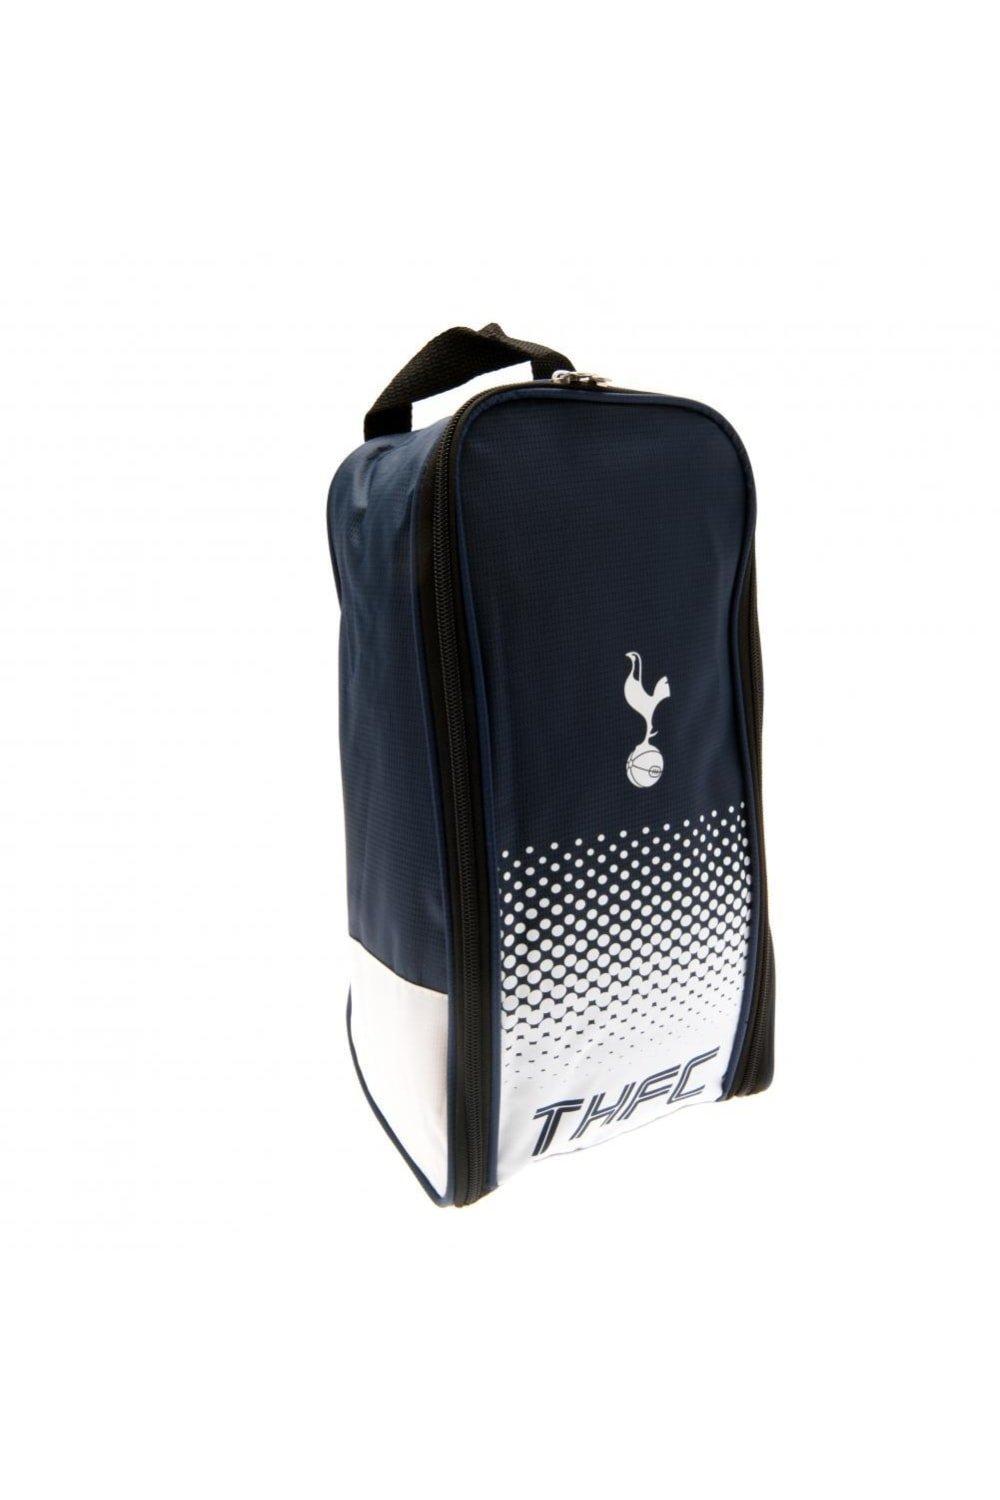 Сумка для обуви Fade Tottenham Hotspur FC, черный цена и фото